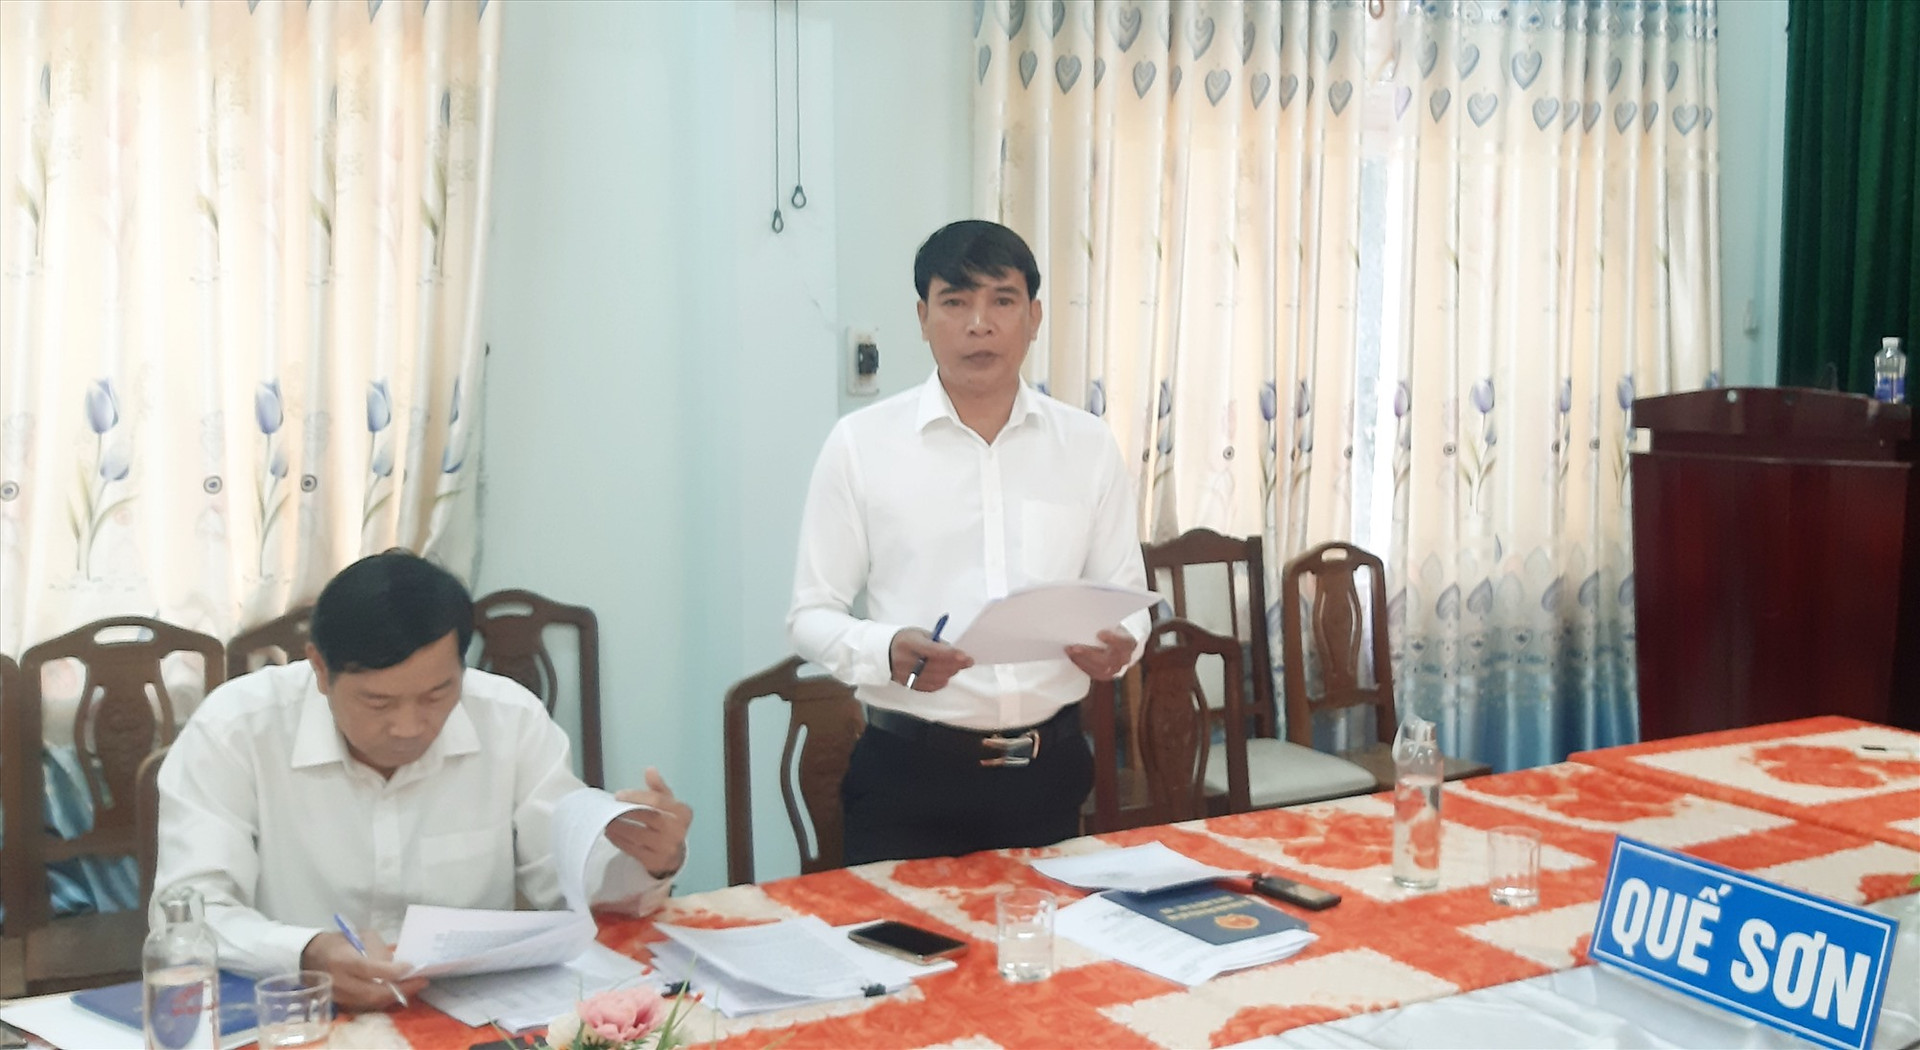 Lãnh đạo UBND huyện Quế Sơn báo cáo việc thu hồi đất và chuyển đổi mục đích sử dụng đất ở địa phương trong giai đoạn 2020 - 2022.   Ảnh: N.S